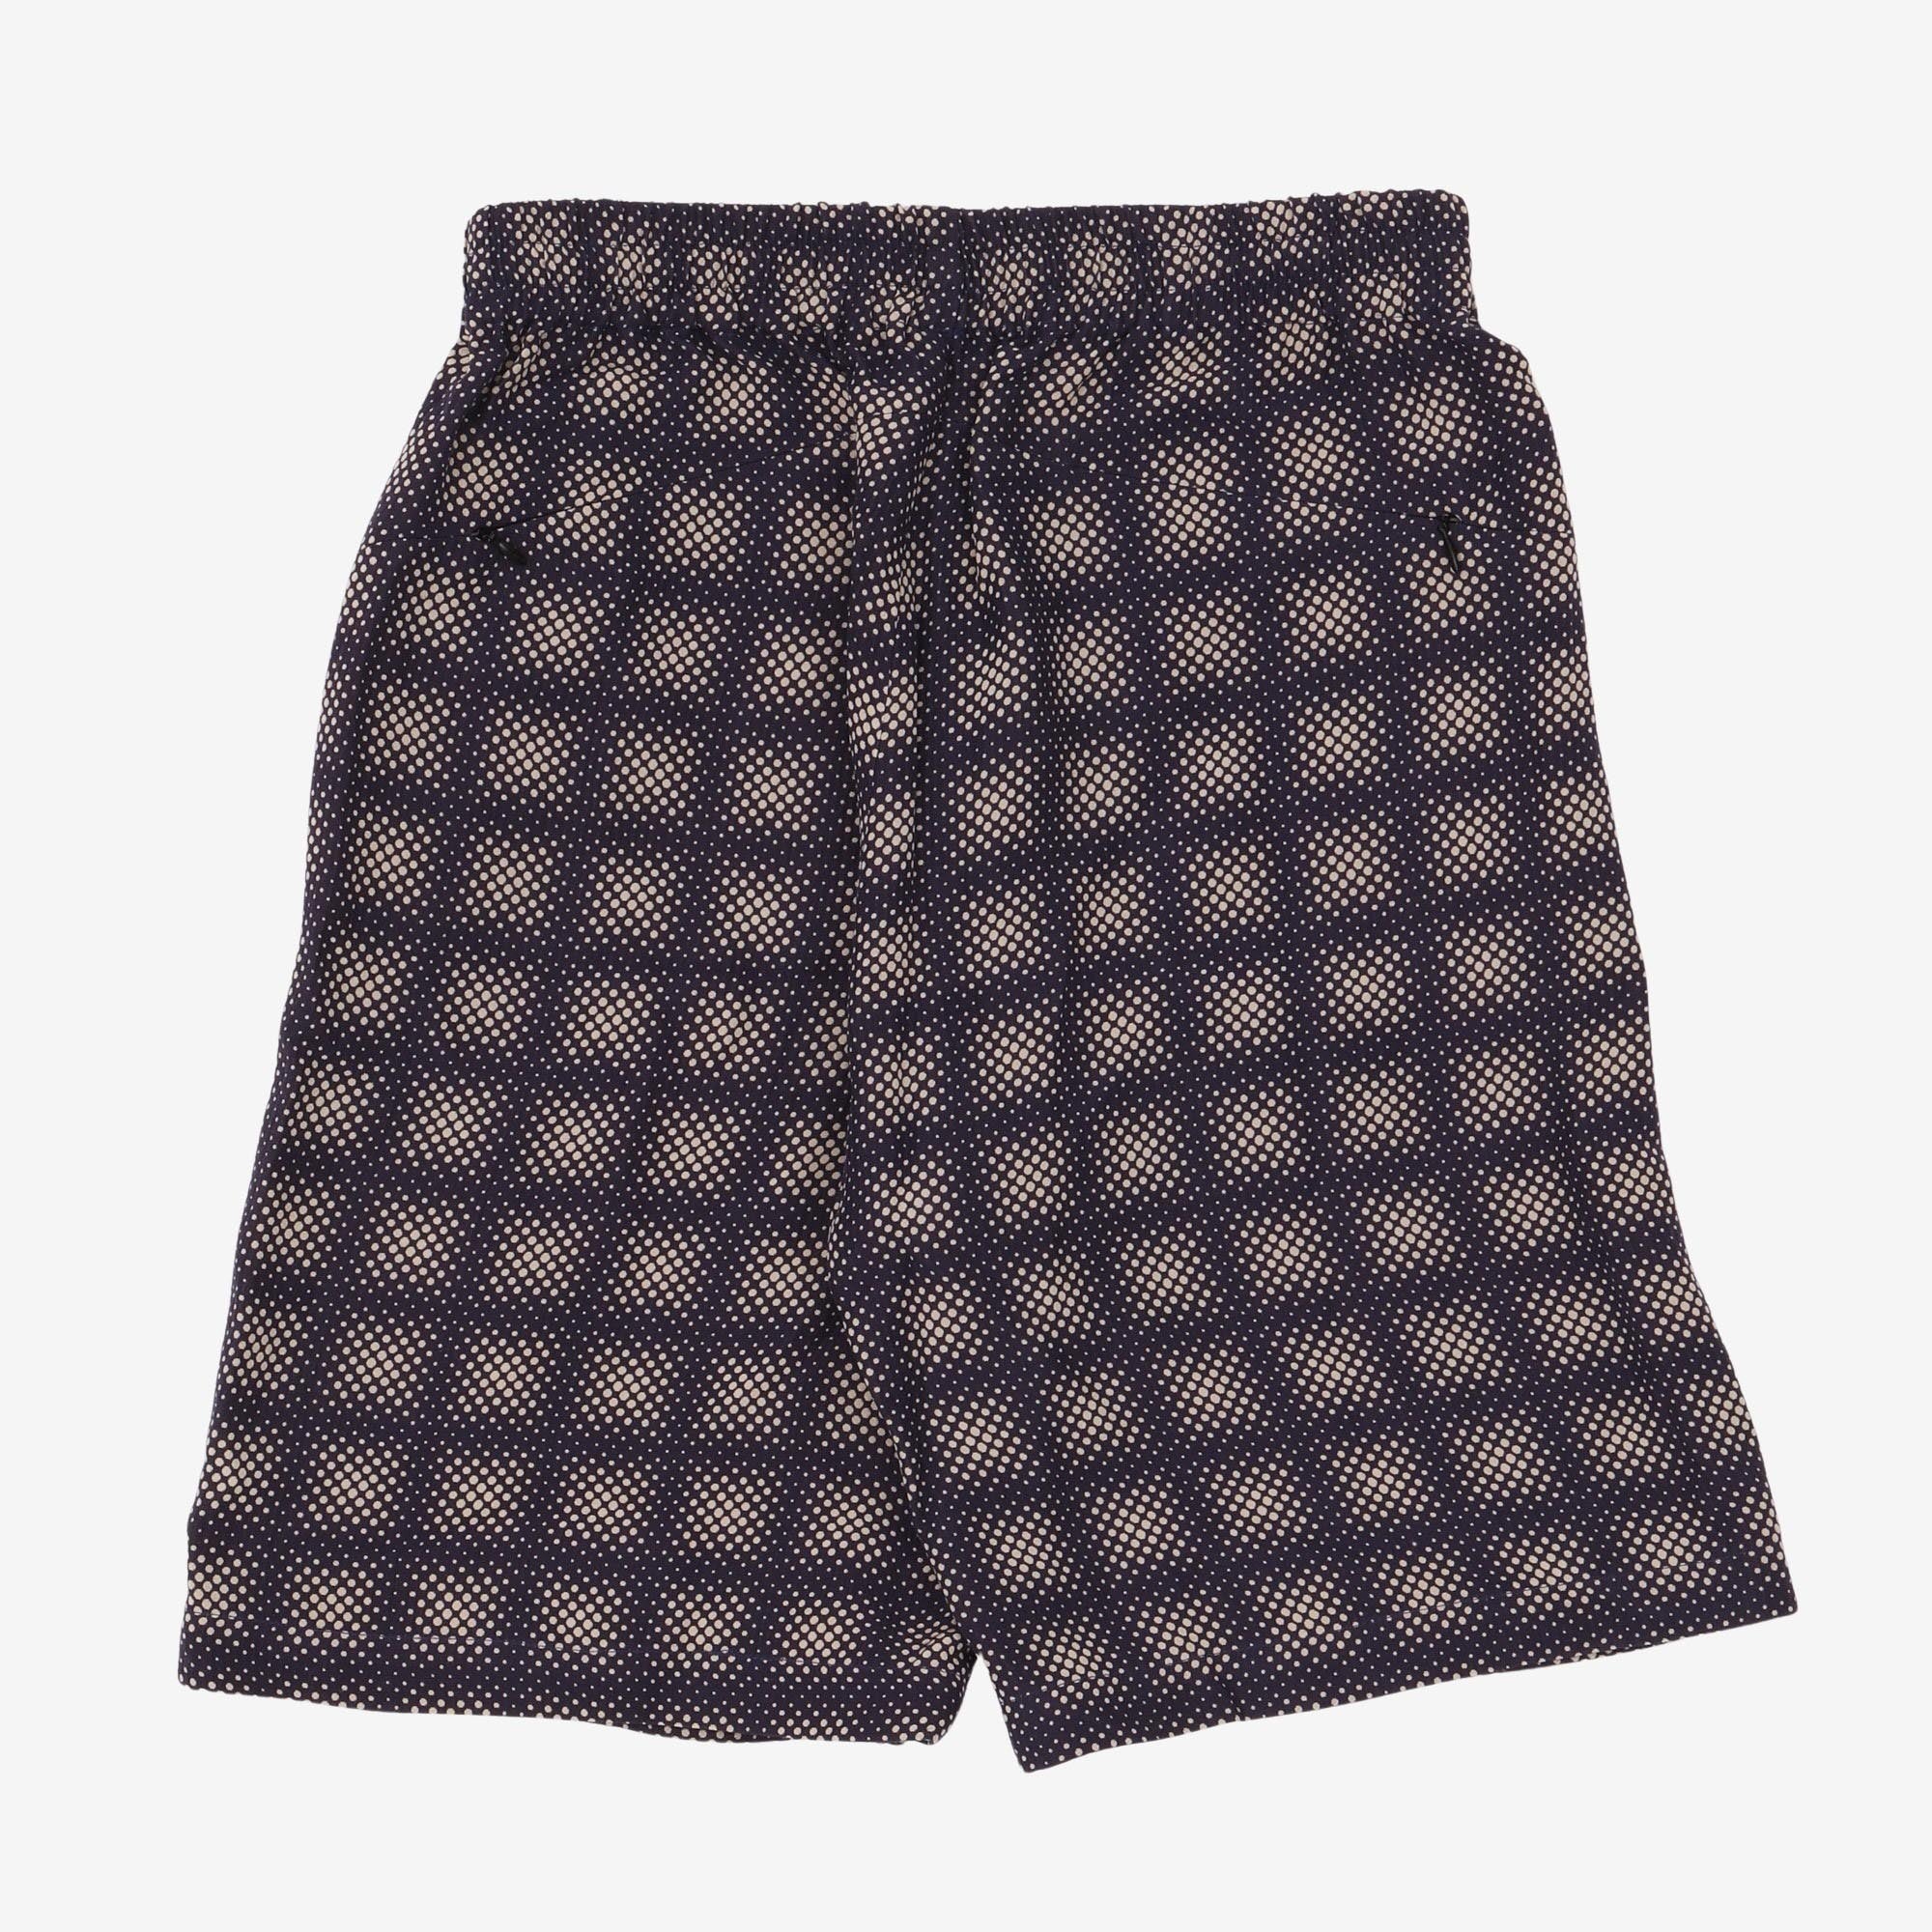 Pattern Shorts